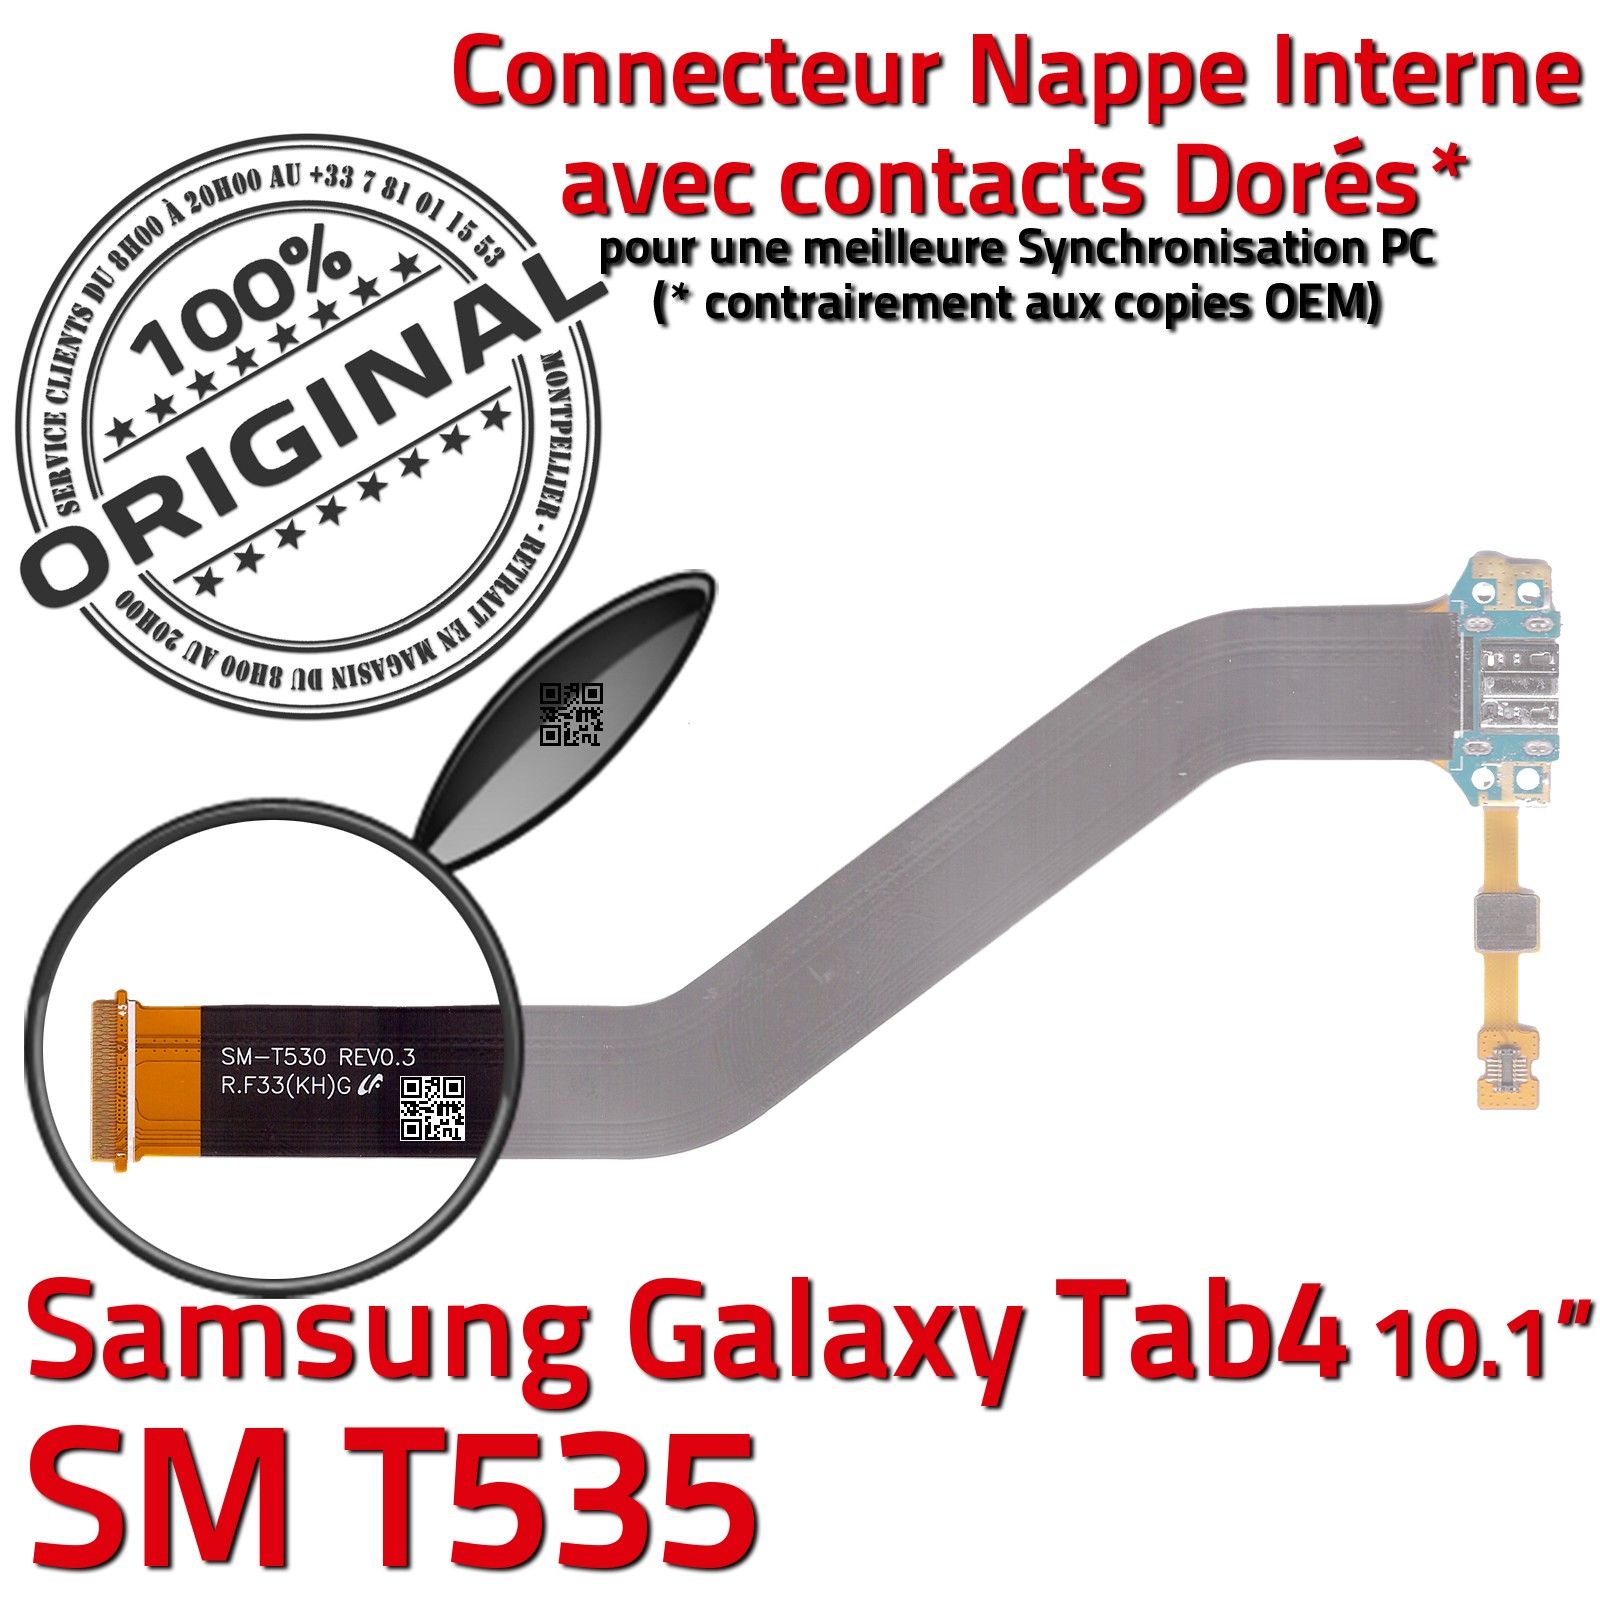 ORIGINAL Samsung Galaxy TAB 4 SM T535 Connecteur de Charge Chargeur MicroUSB Nappe OFFICIELLE Qualité Contacts Dorés Réparation